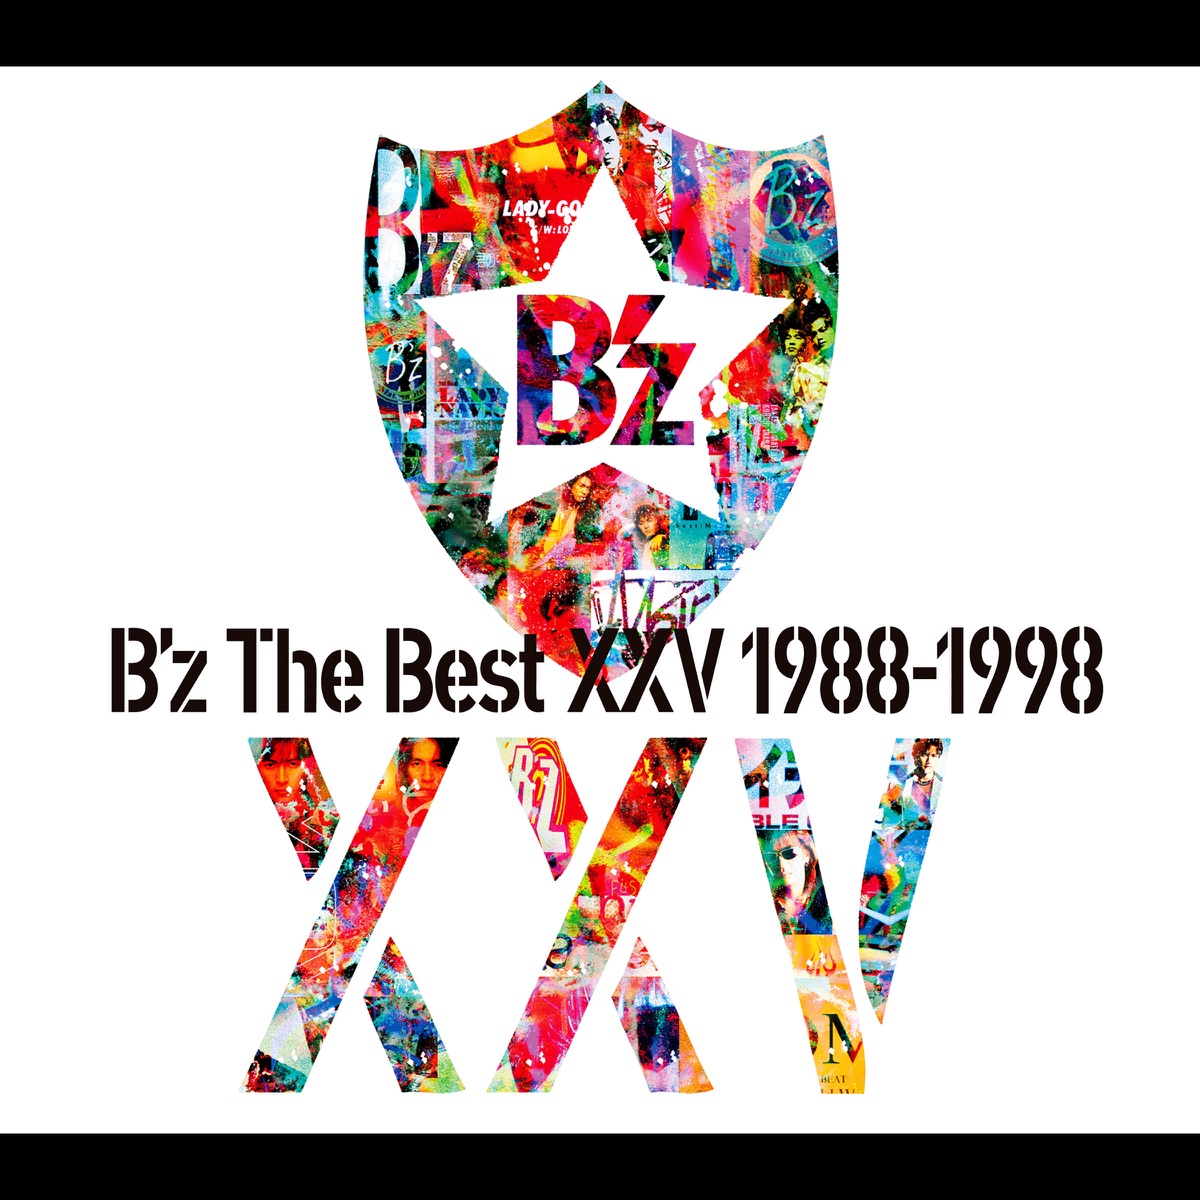 ‎B'z The Best XXV 1988-1998 - B'zのアルバム - Apple Music